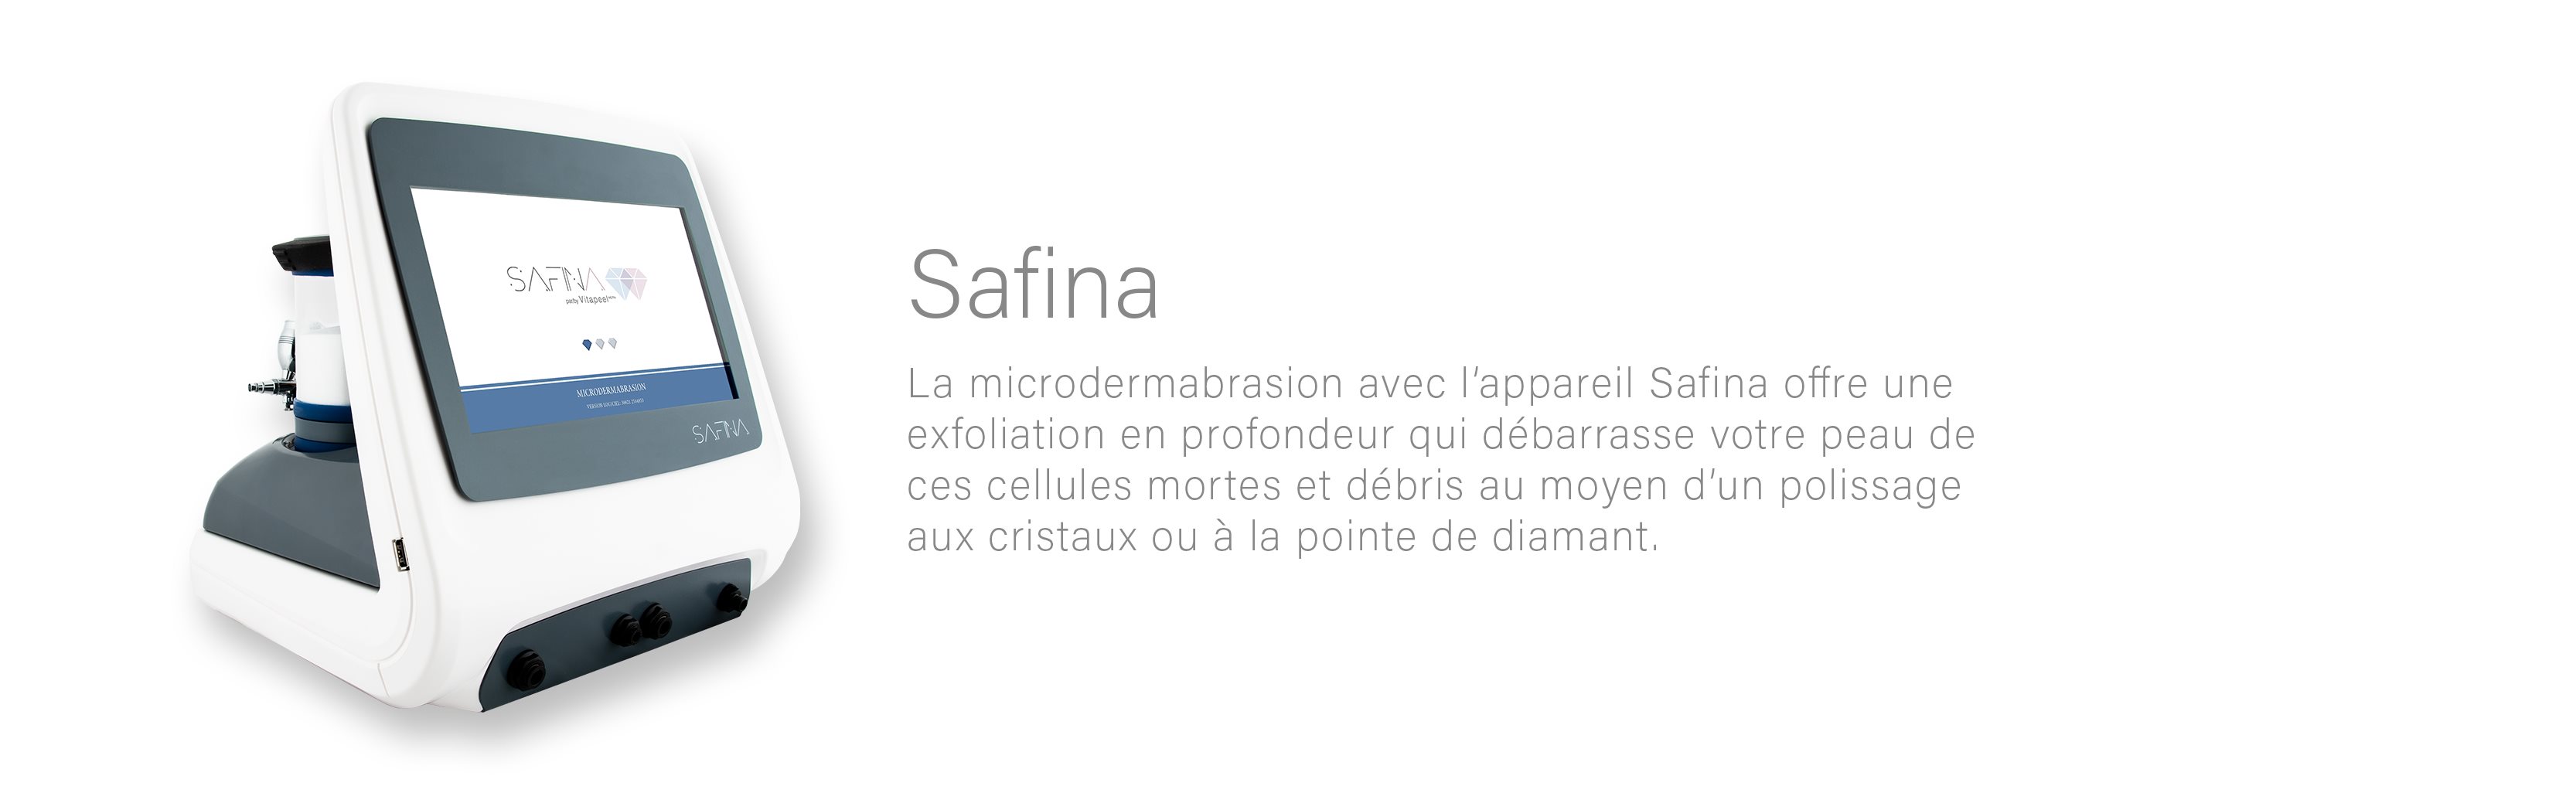 safina_fr23